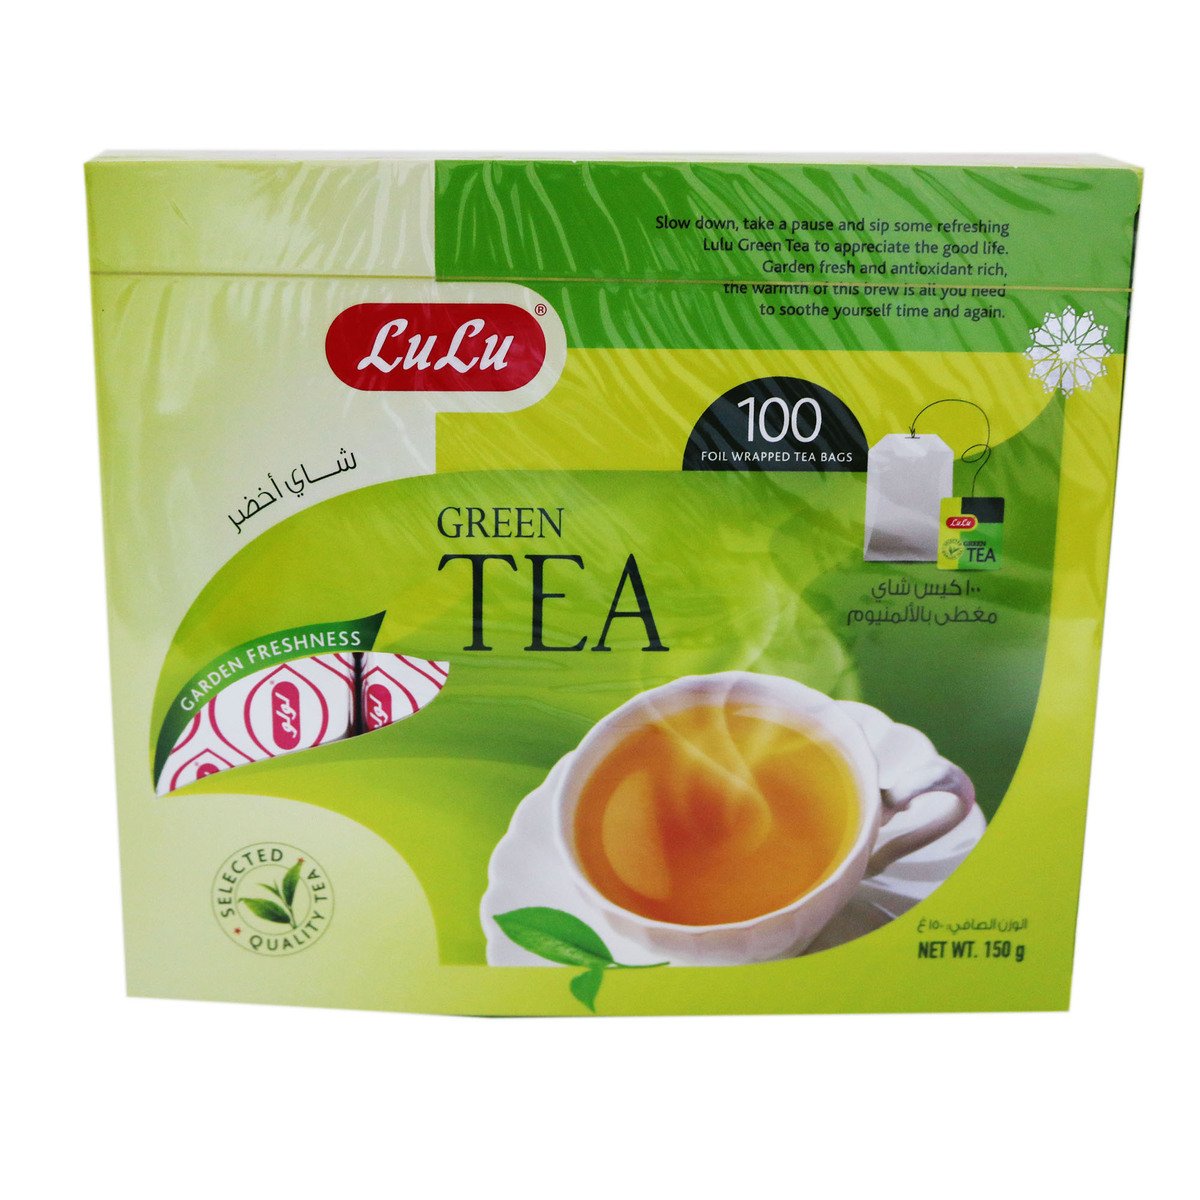 Lulu Green Tea Bag 100pcs